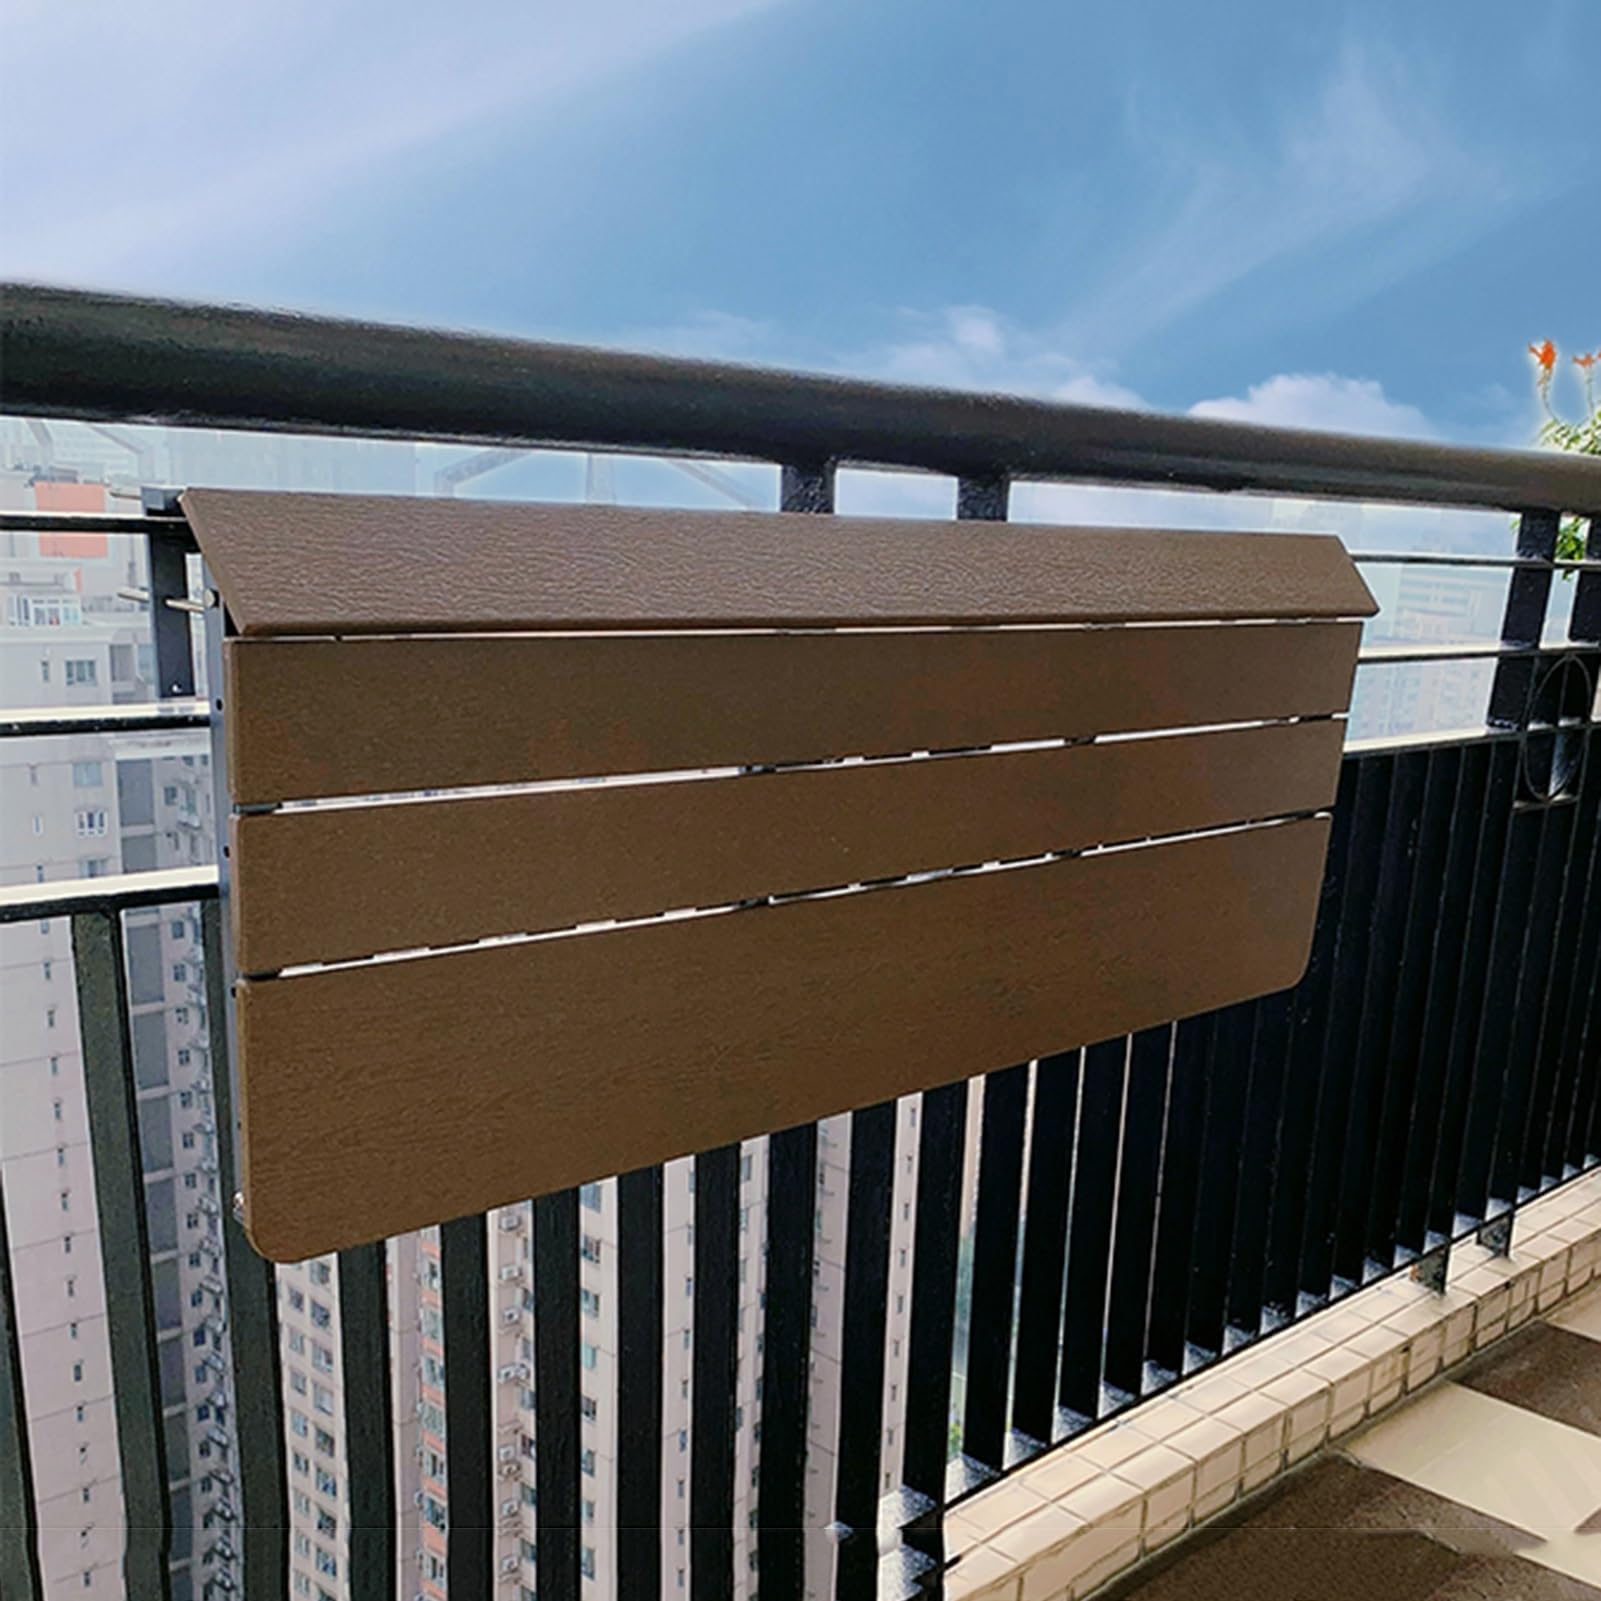 NIZAME Balkontisch Hängend Klappbar Geländertisch, TerrassentischBalkontisch mit 5 Verstellbaren Höhen, Mehrzweck-Hubtisch für Innen und Außen (Color : Wood, Size : 80x37cm)